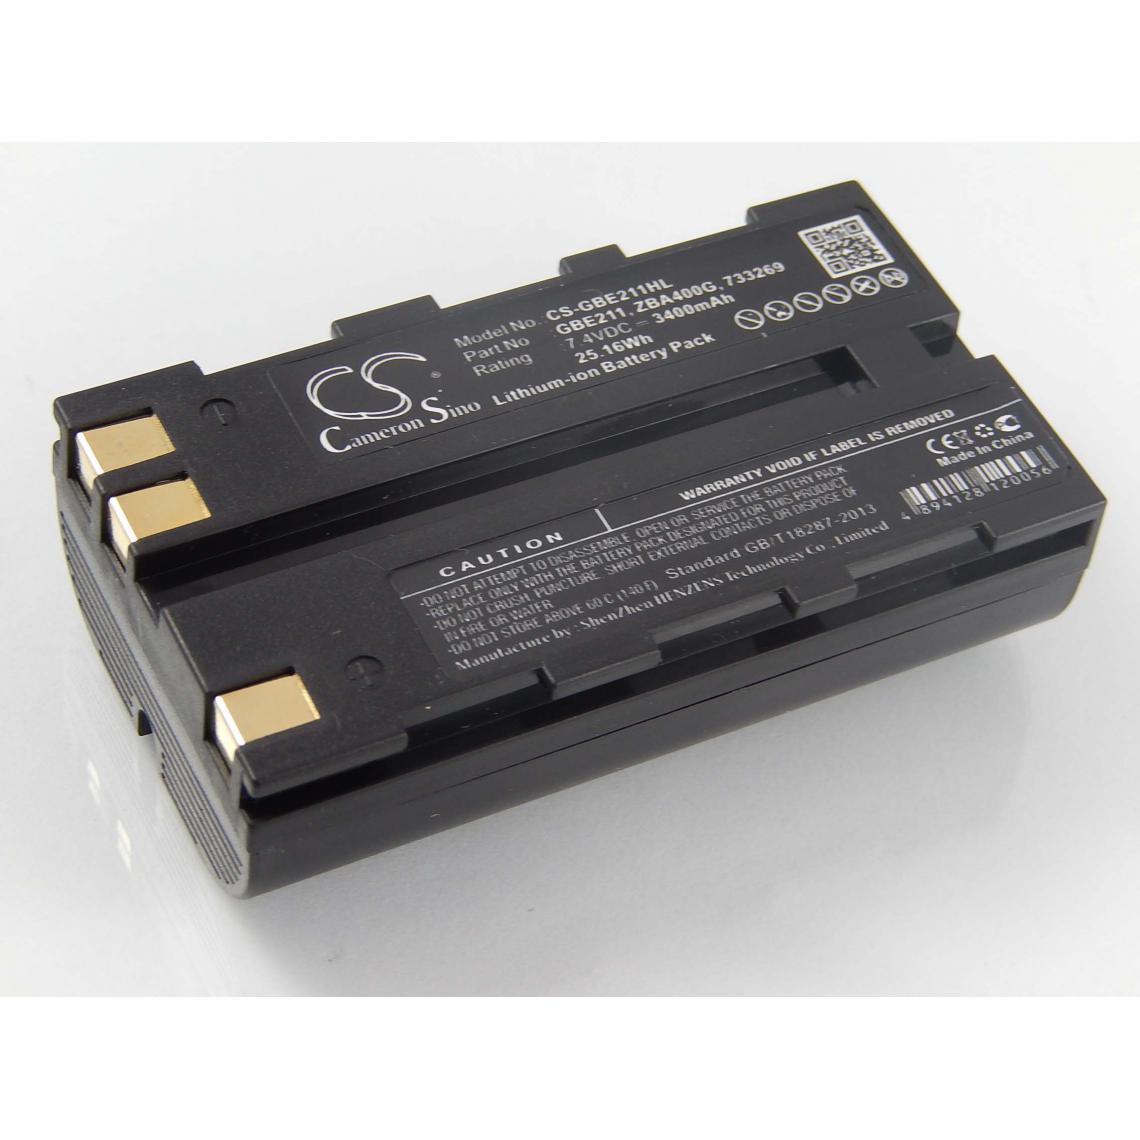 Vhbw - vhbw Batterie remplacement pour Leica 724117, 733269, 733270 pour dispositif de mesure laser, outil de mesure (3400mAh, 7,4V, Li-ion) - Piles rechargeables